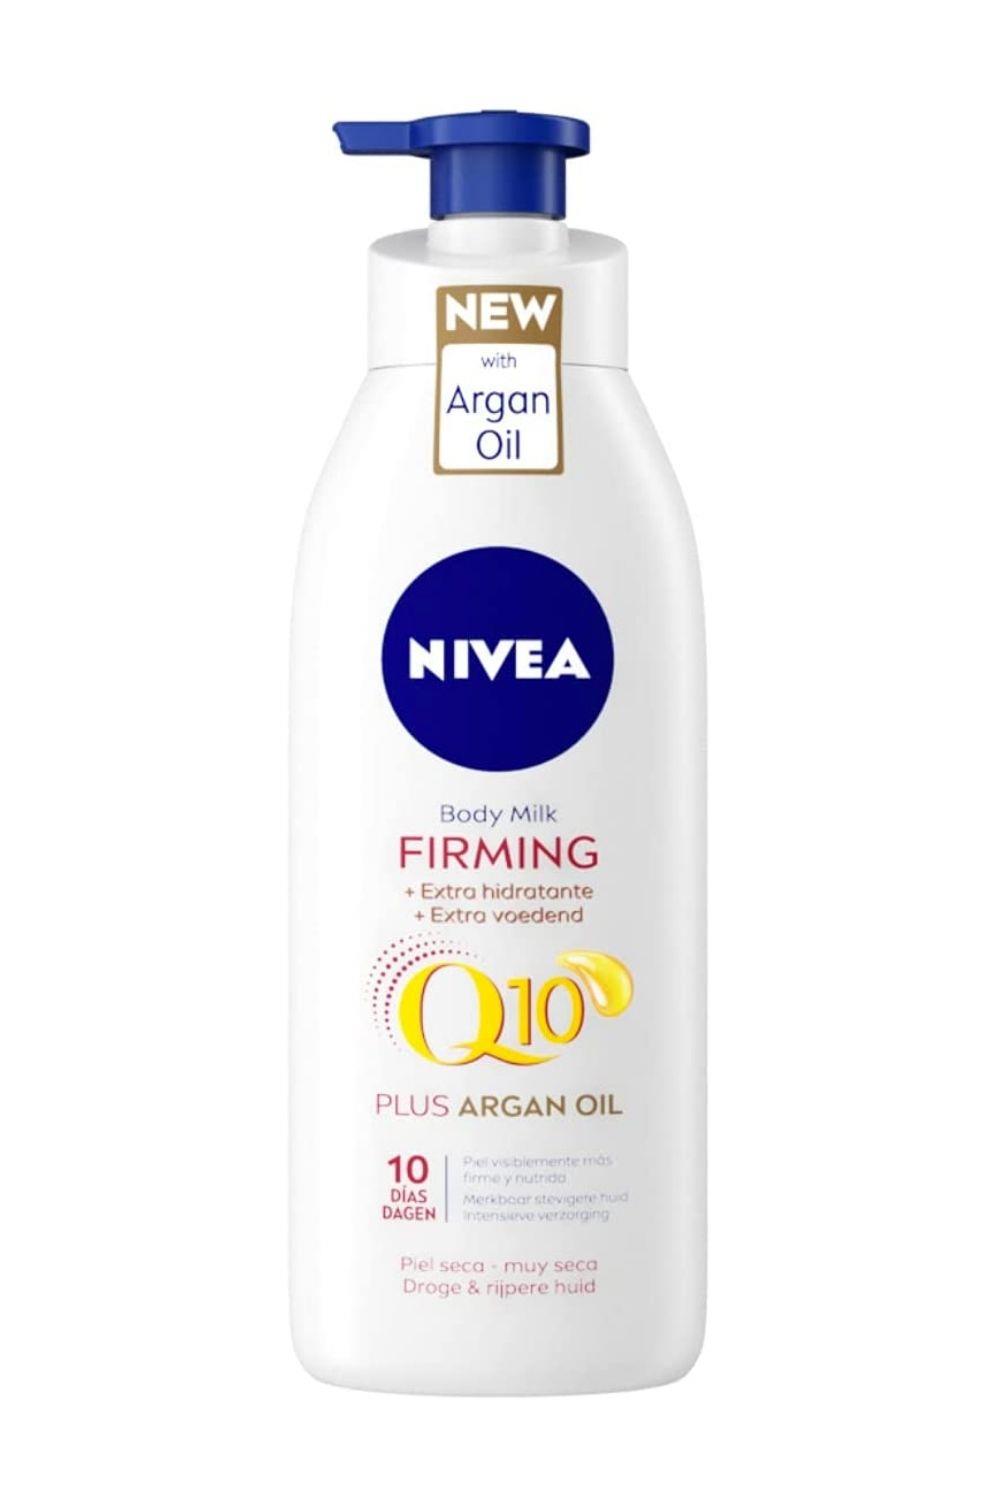 NIVEA Q10 Aceite de Argán Body Milk hidratante Reafirmante + Hidratante (1 x 400 ml), loción corporal para reafirmar la piel y mejorar su elasticidad en 10 días